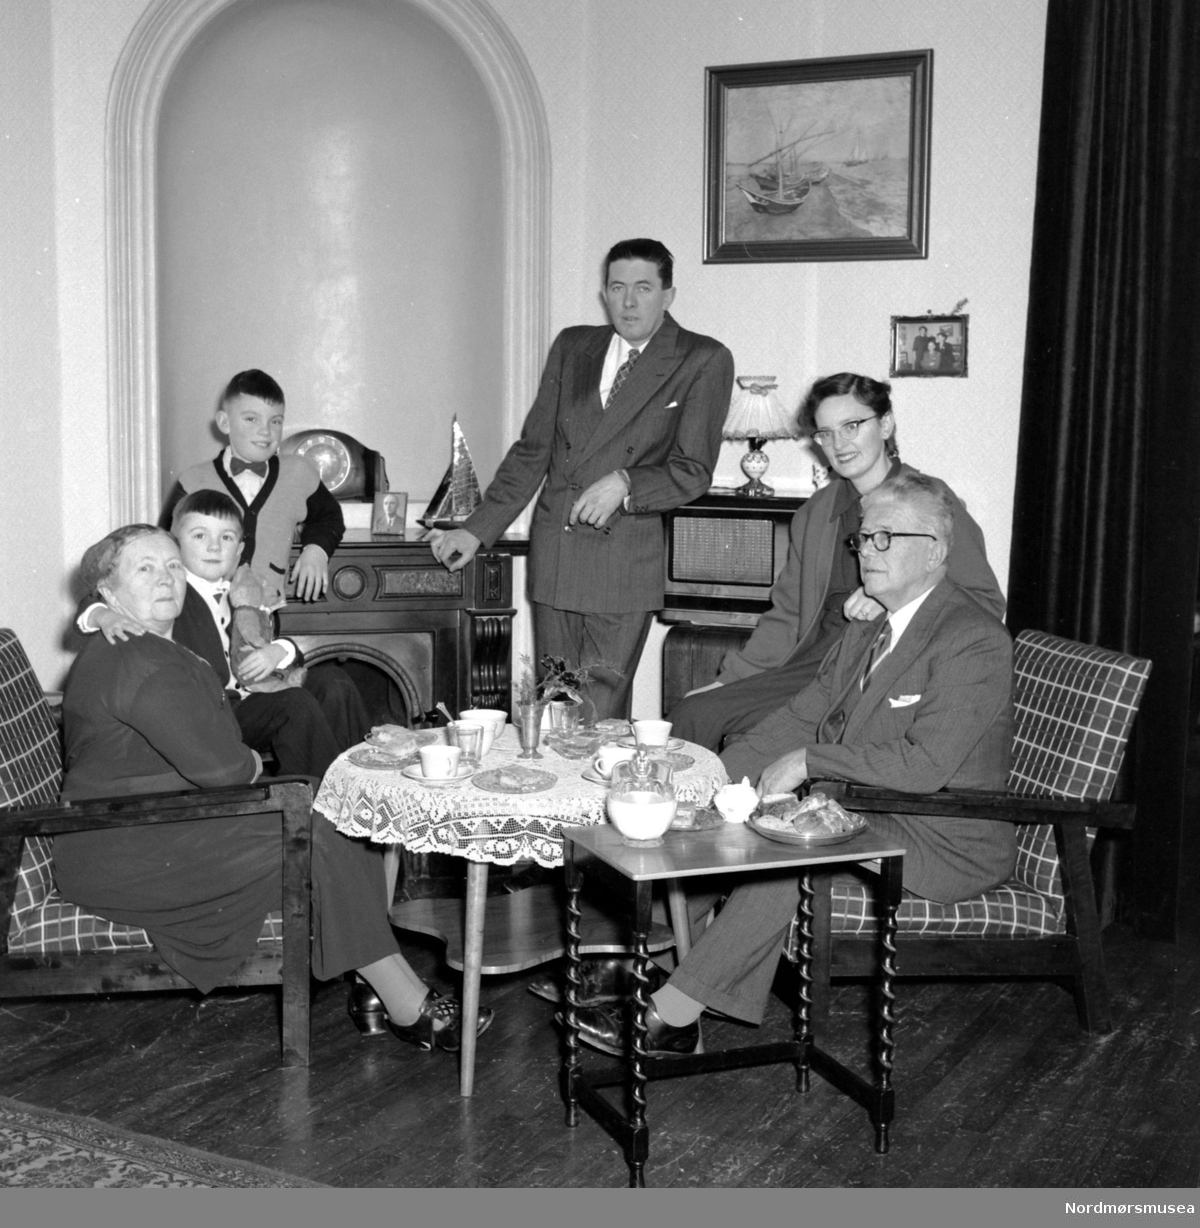 Familiefoto fra slekten Frislid i Kristiansund, hvor vi ser familien samlet rundt tebordet. Utover etternavnet, er det ukjent hvem vi ser på bildet, men mannen i midten er trolig Per Frislid. Fra Nordmøre museums fotosamlinger. EFR2015